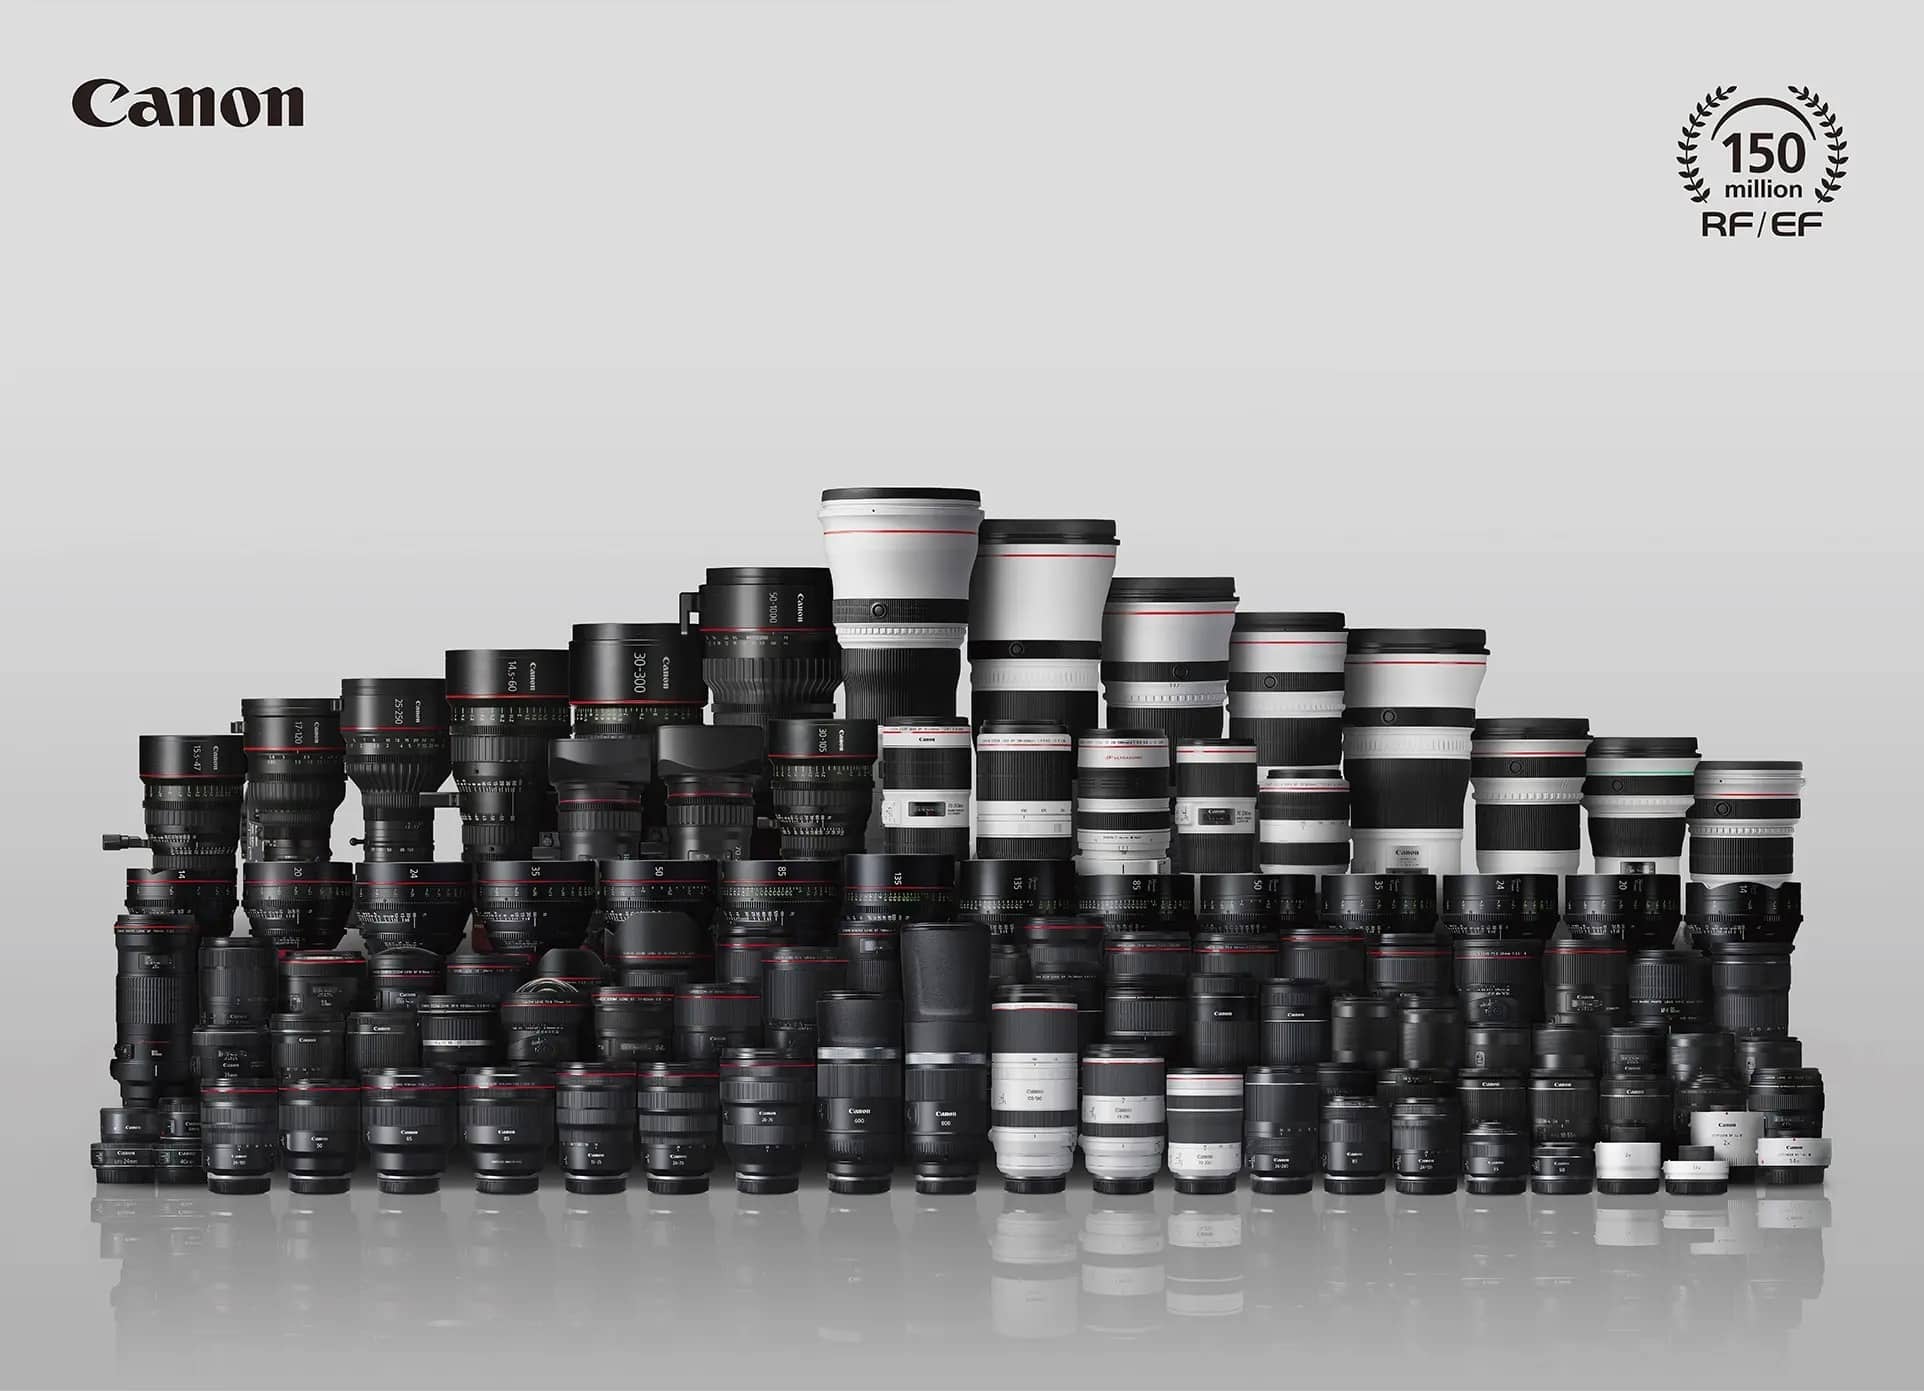 Canon hiện tại đã sản xuất hơn 150 triệu ống kính RF và EF sau gần 35 năm